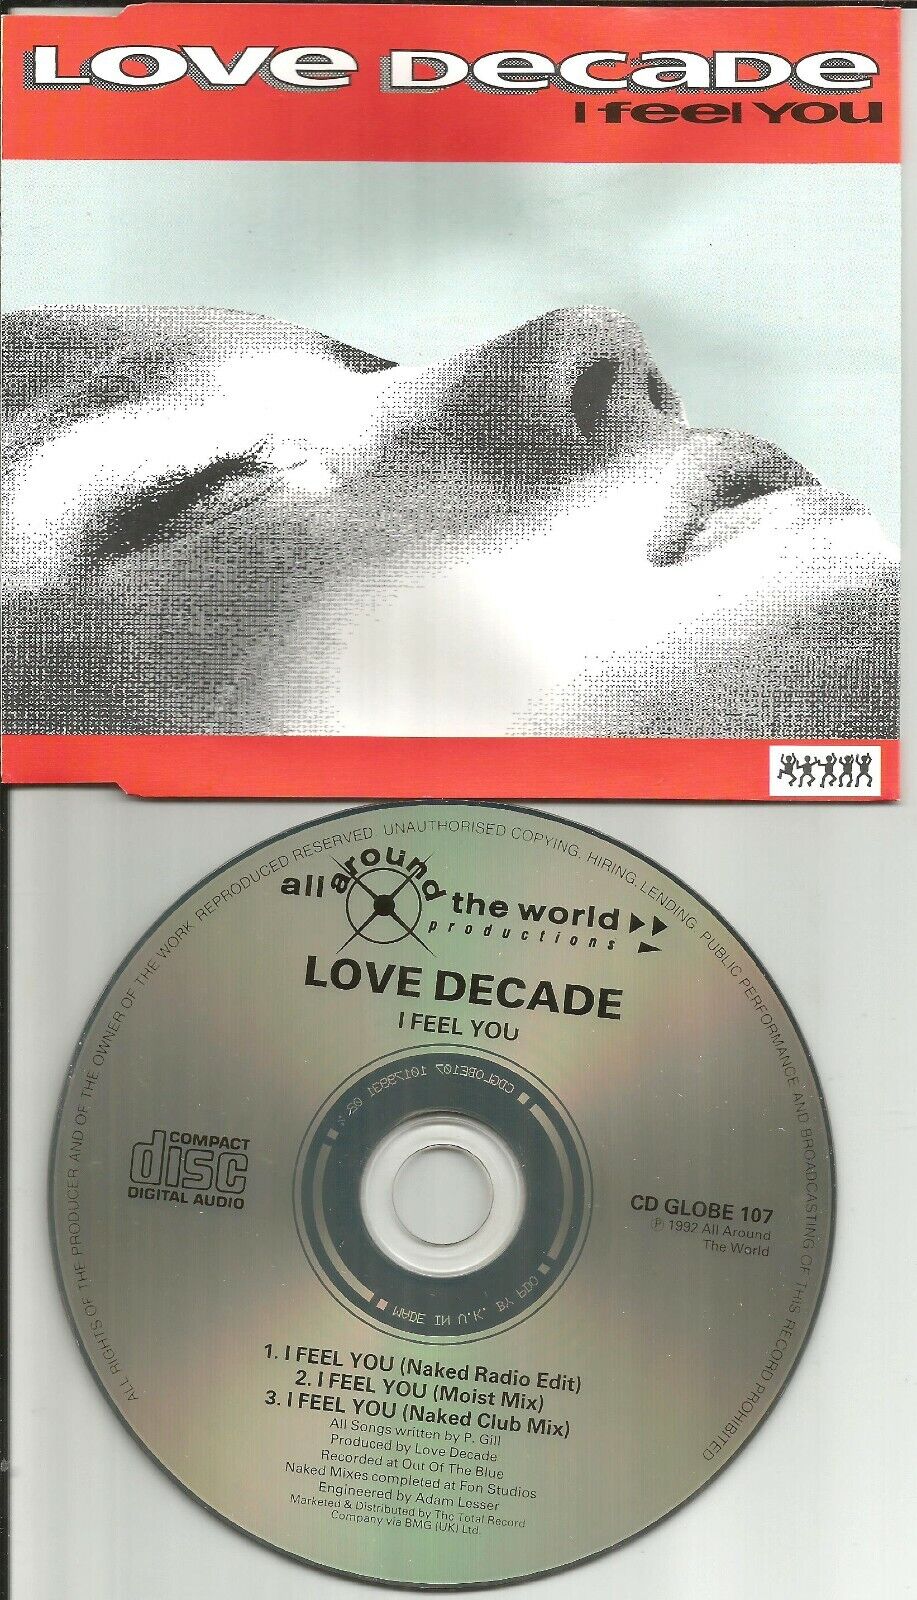 Decadance LOVE DECADE I feel you w/ 3 RARE MIXES Europe CD single USA seller 92